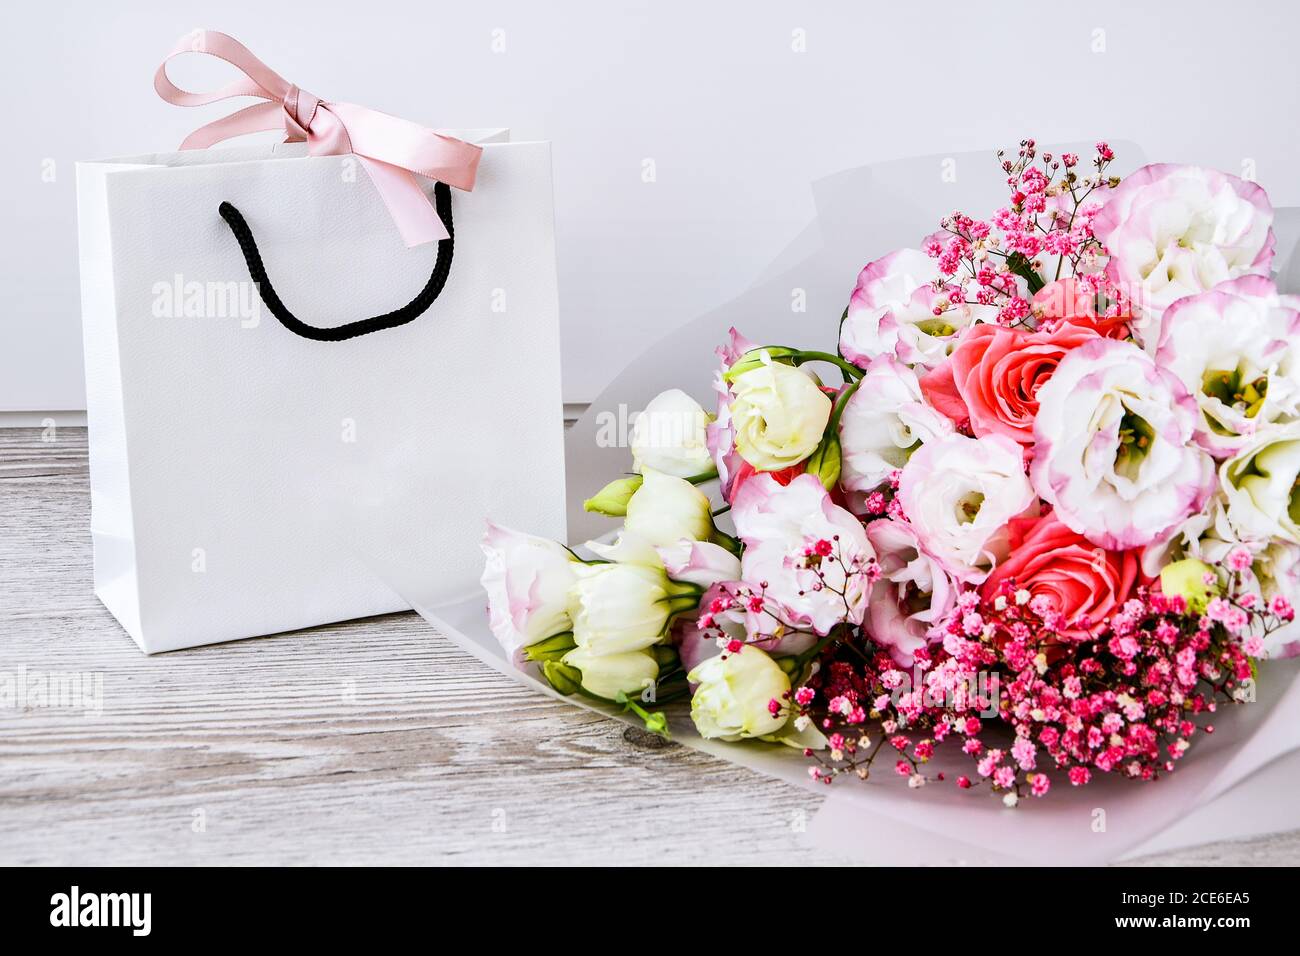 Lieferservice Verpackung Blumenstrauß Blumen rosa weiß Hintergrund Geschenk  Versand. Schöne romantische Komposition mit Blumen. Valentinstag  Stockfotografie - Alamy